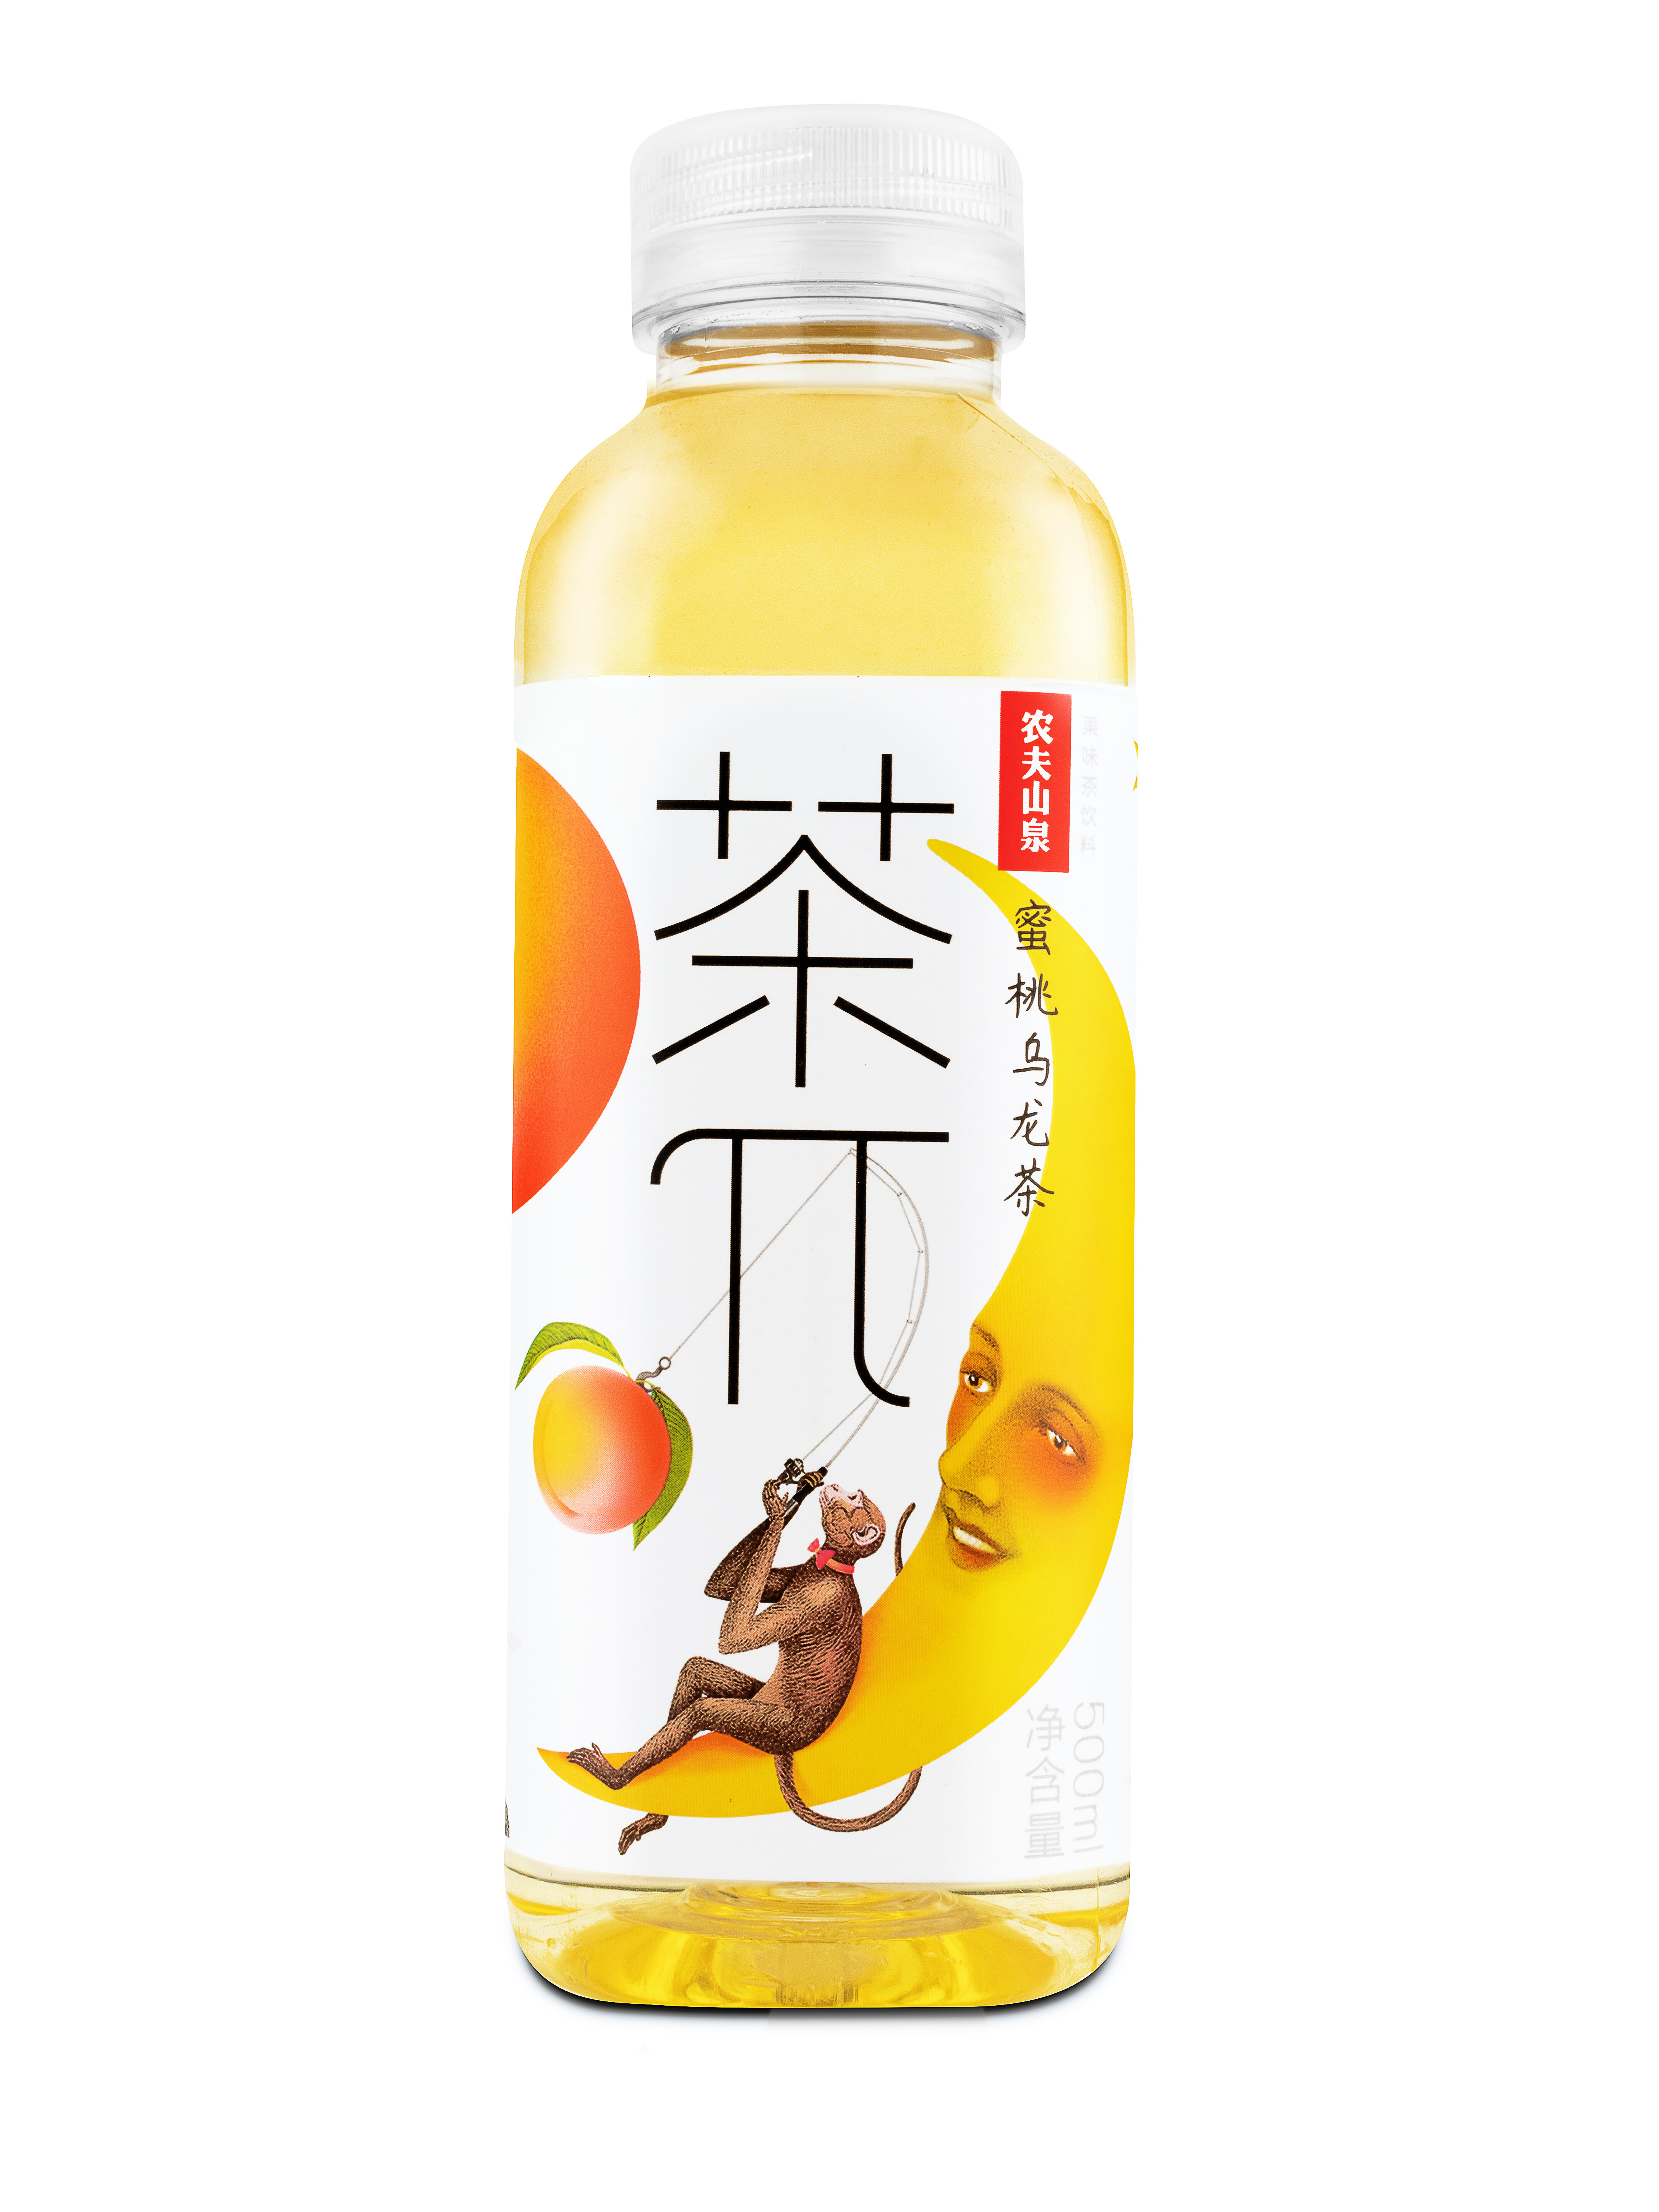 Напиток "Чай п" негазированный Улун с медовым персиком 0,5л*15шт